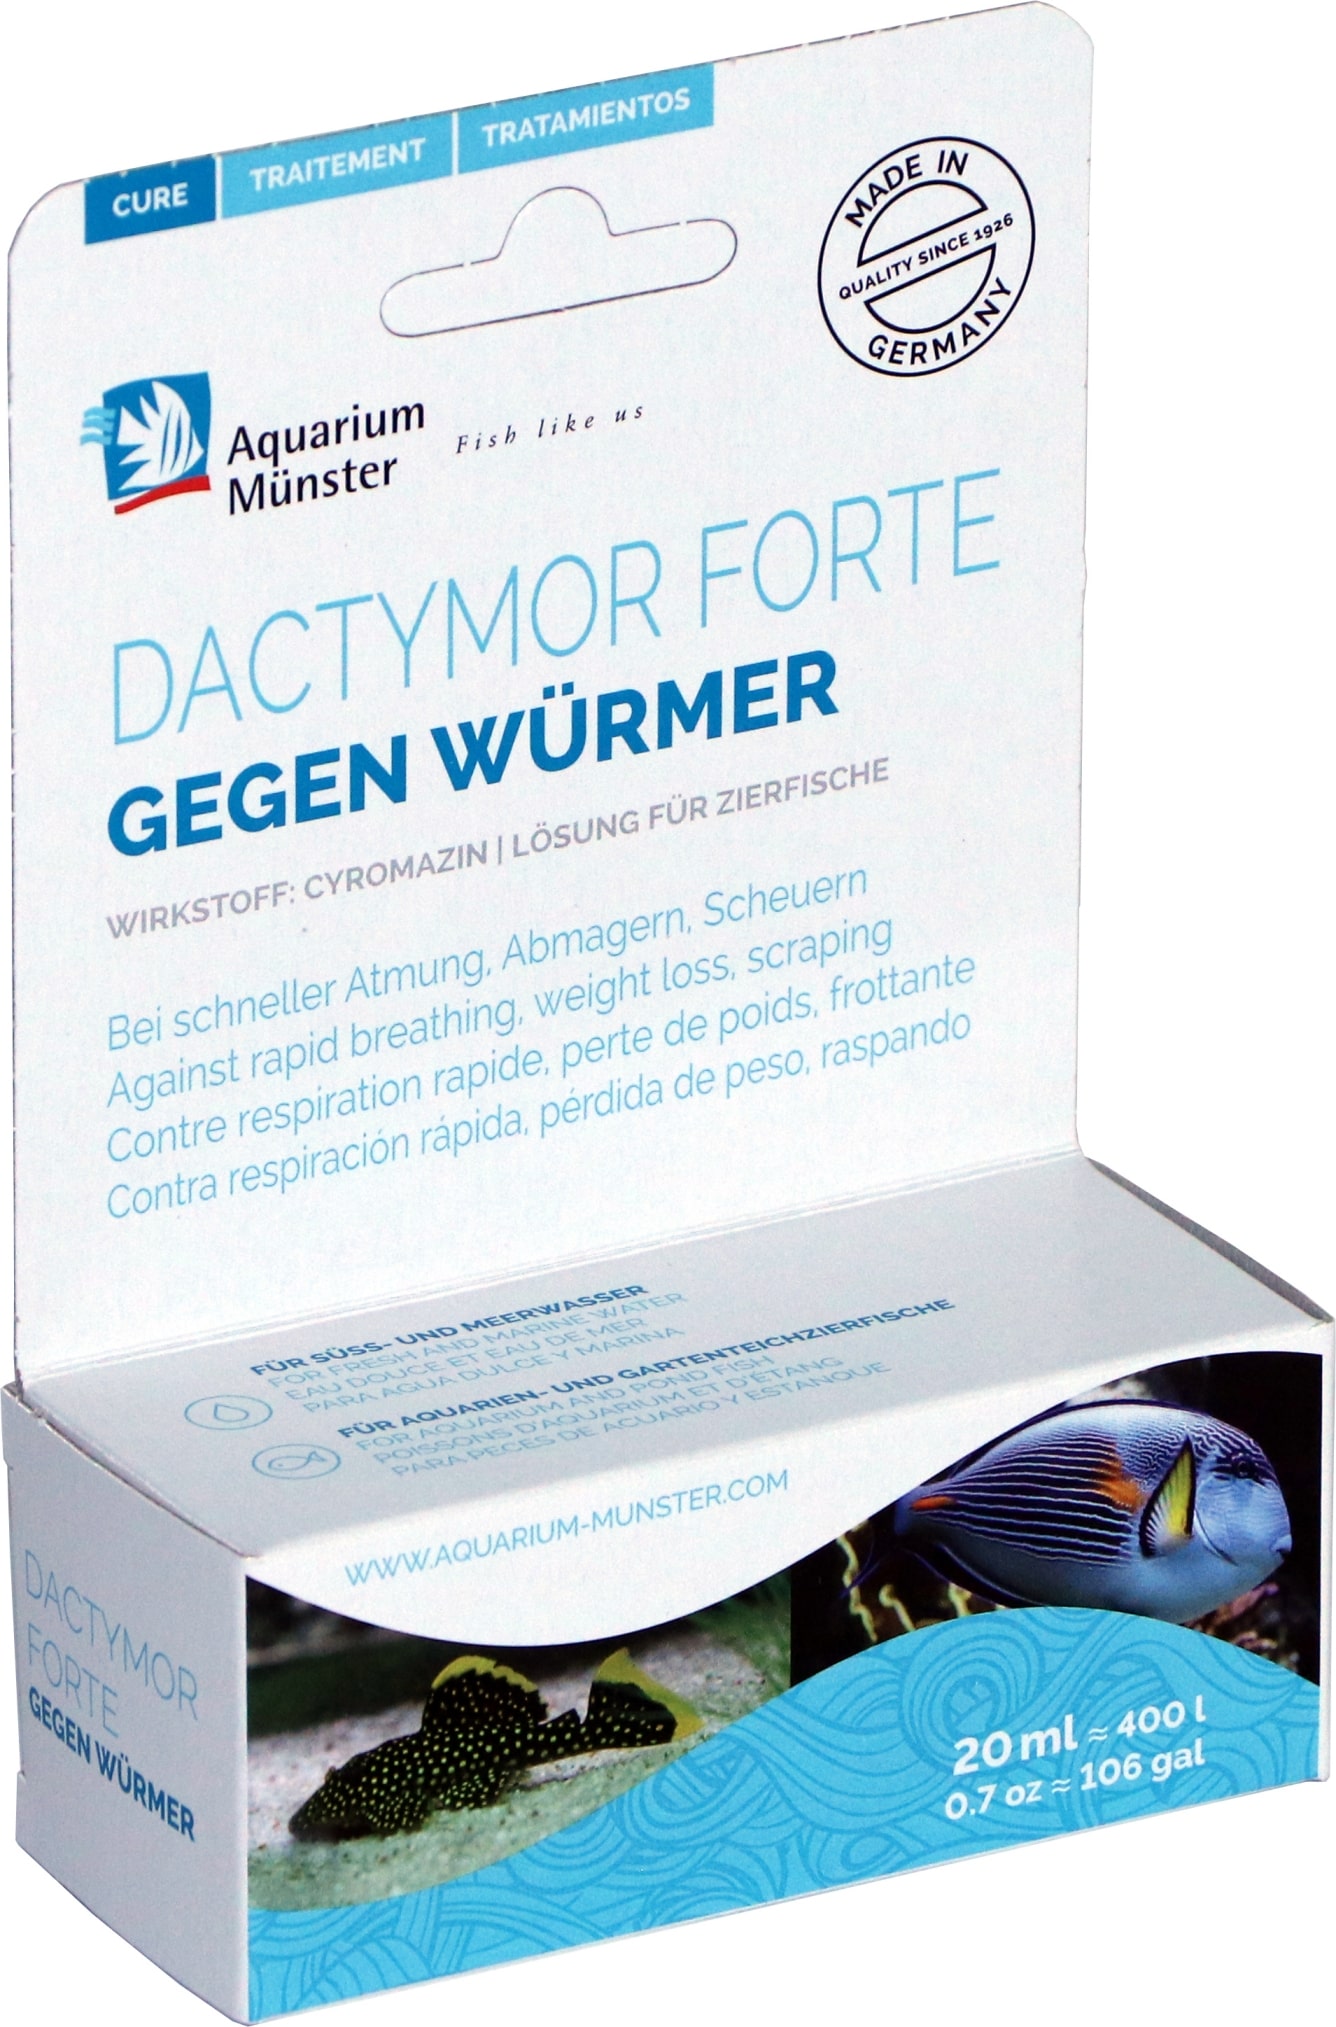 aquarium-munster-dactymor-forte-20-ml-traitement-concentre-contre-les-vers-types-gyrodactylus-traite-jusqu-a-400l-min(1)